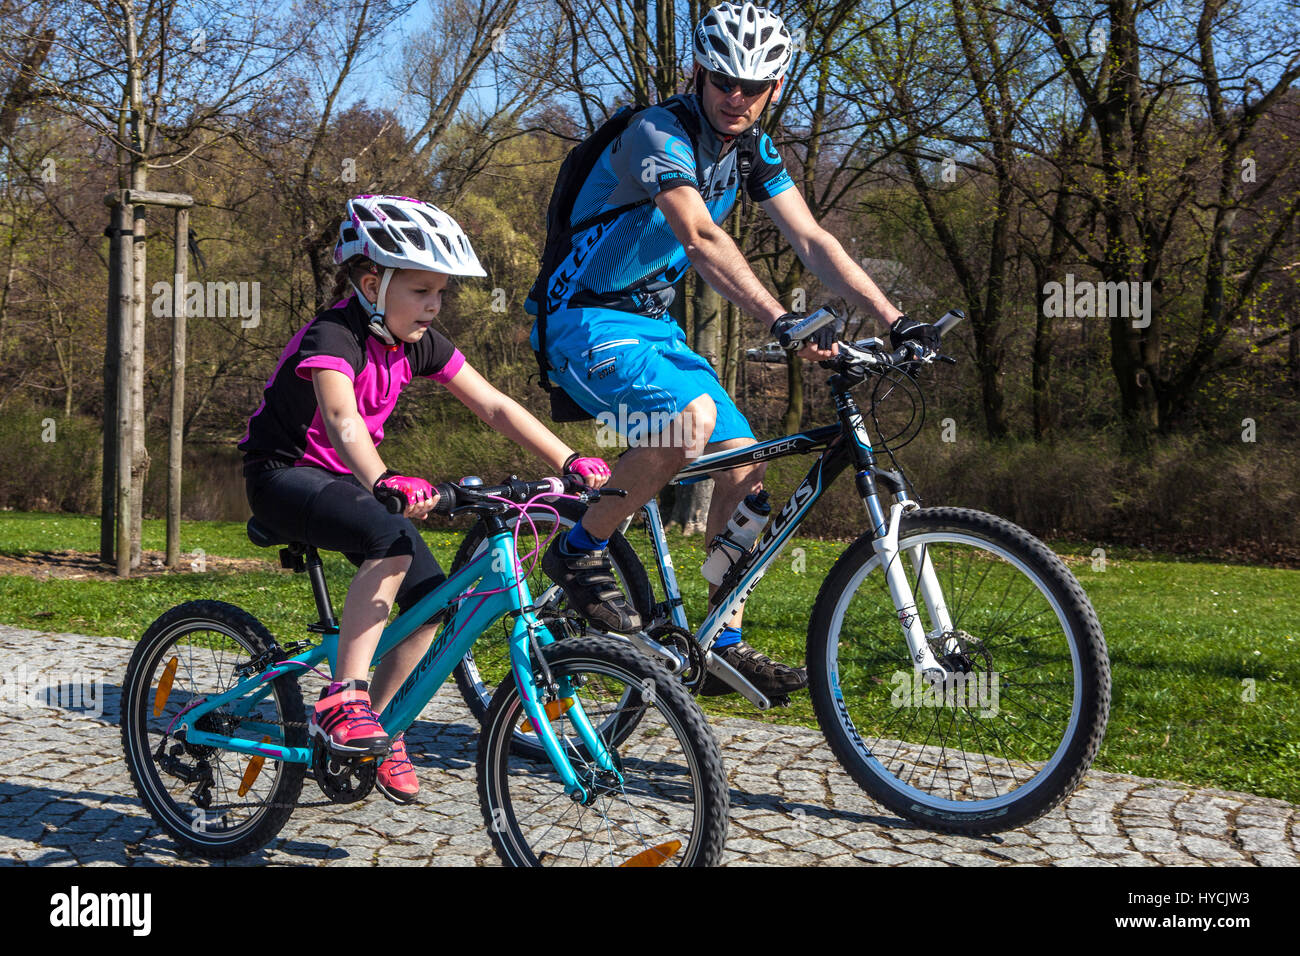 Fahrradfahrer auf dem Fahrrad Kind fährt Fahrradhelm auf Radweg Kind fährt Fahrrad mit Helm Stockfoto